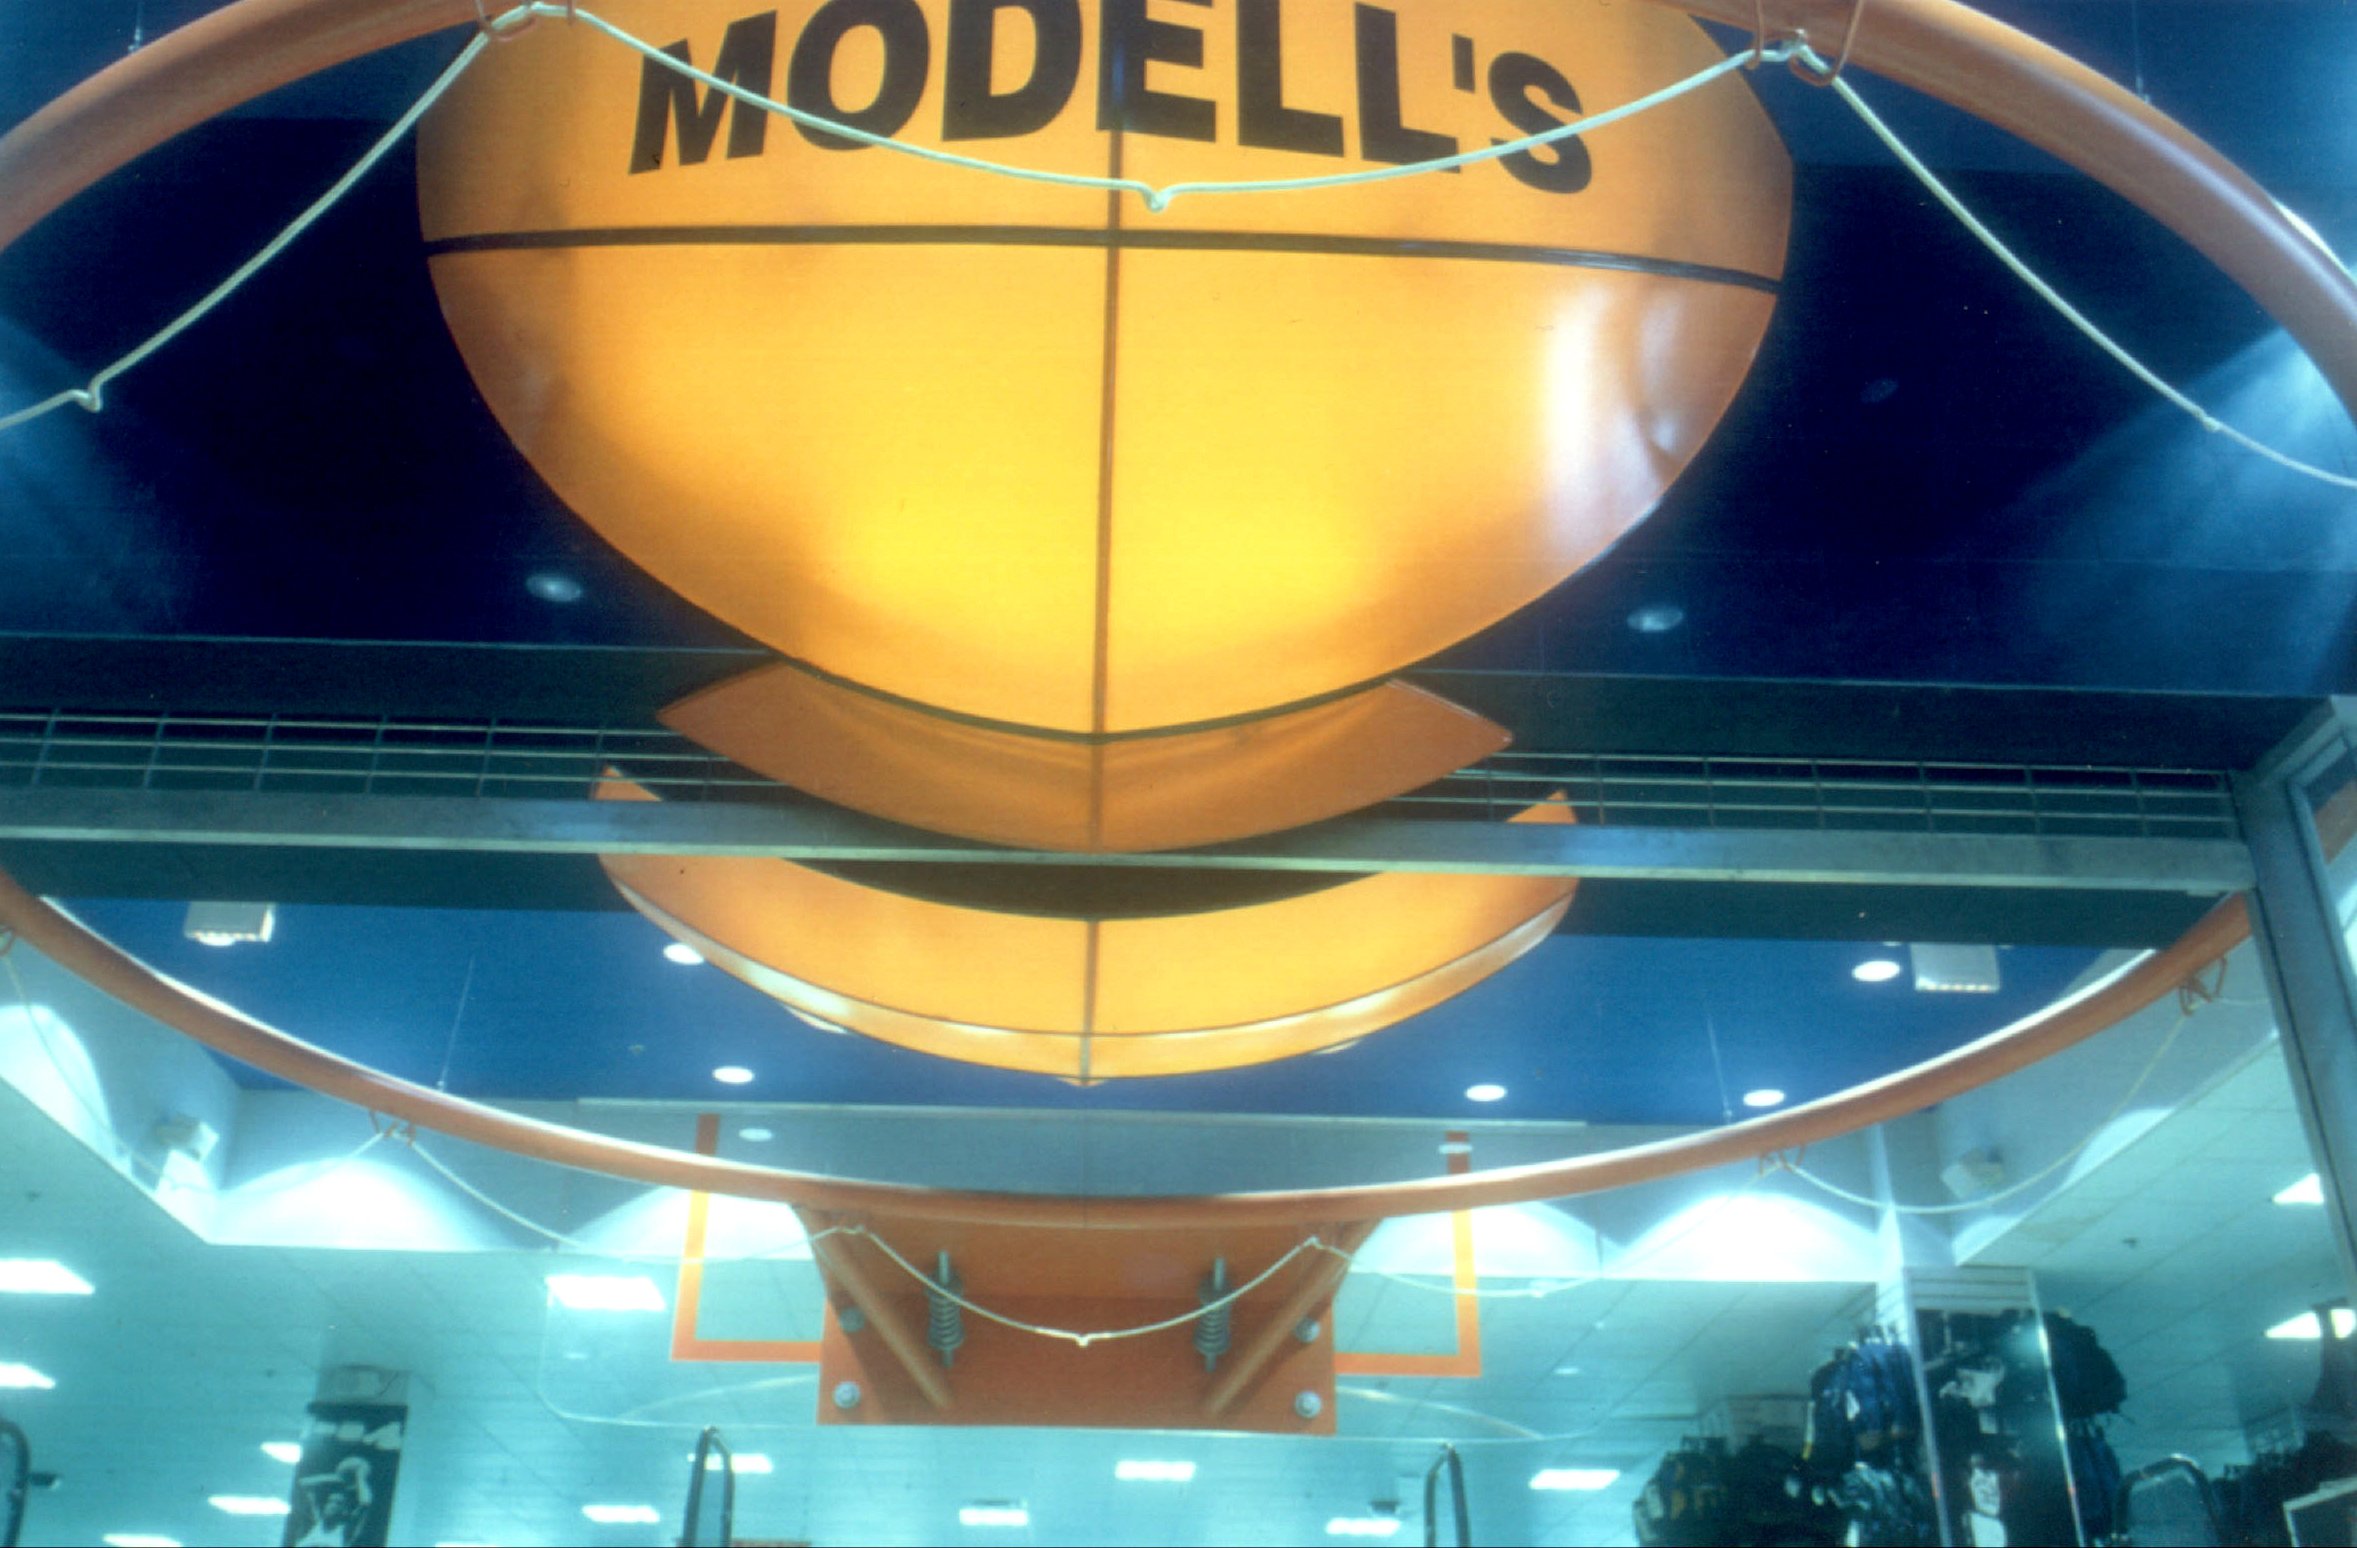 Modells - Basketball Closeup.jpg